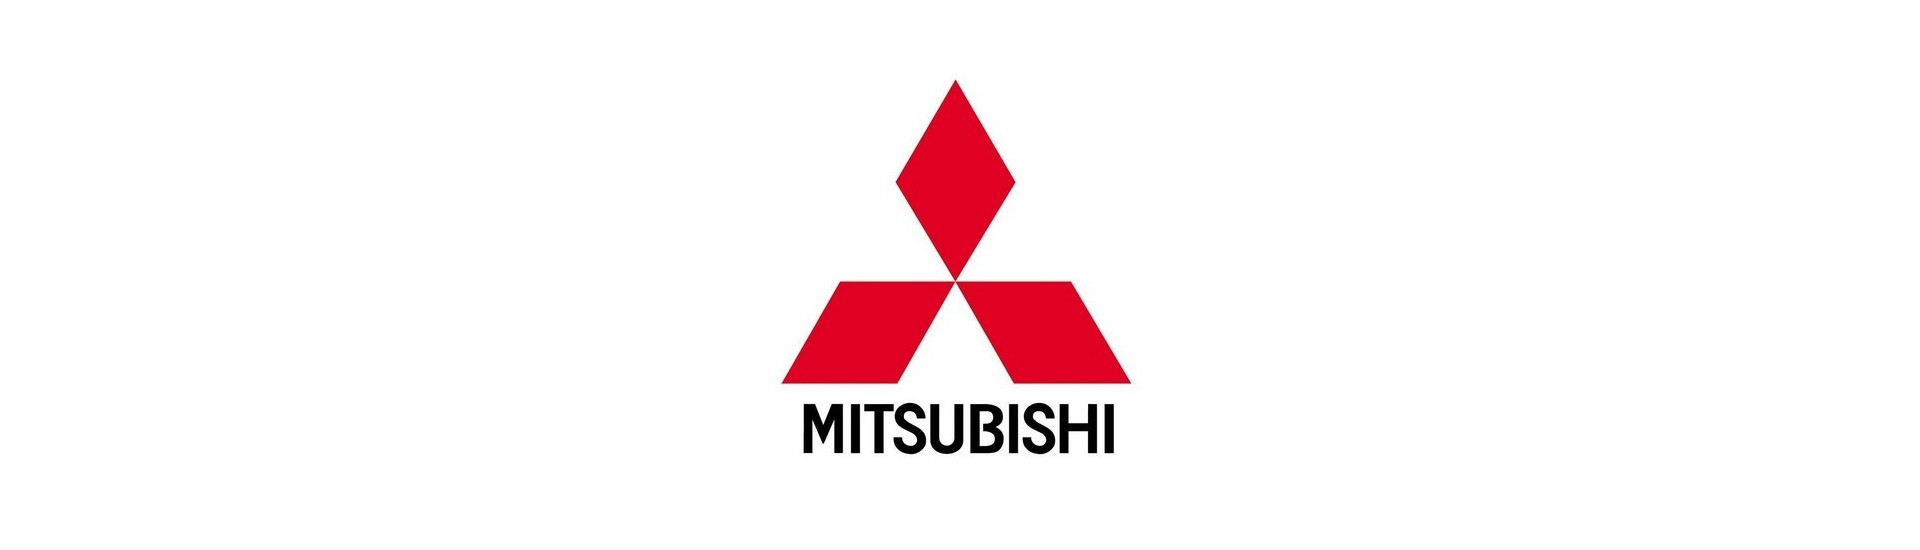 Preriscaldamento candela al miglior prezzo auto senza permesso Mitsubishi